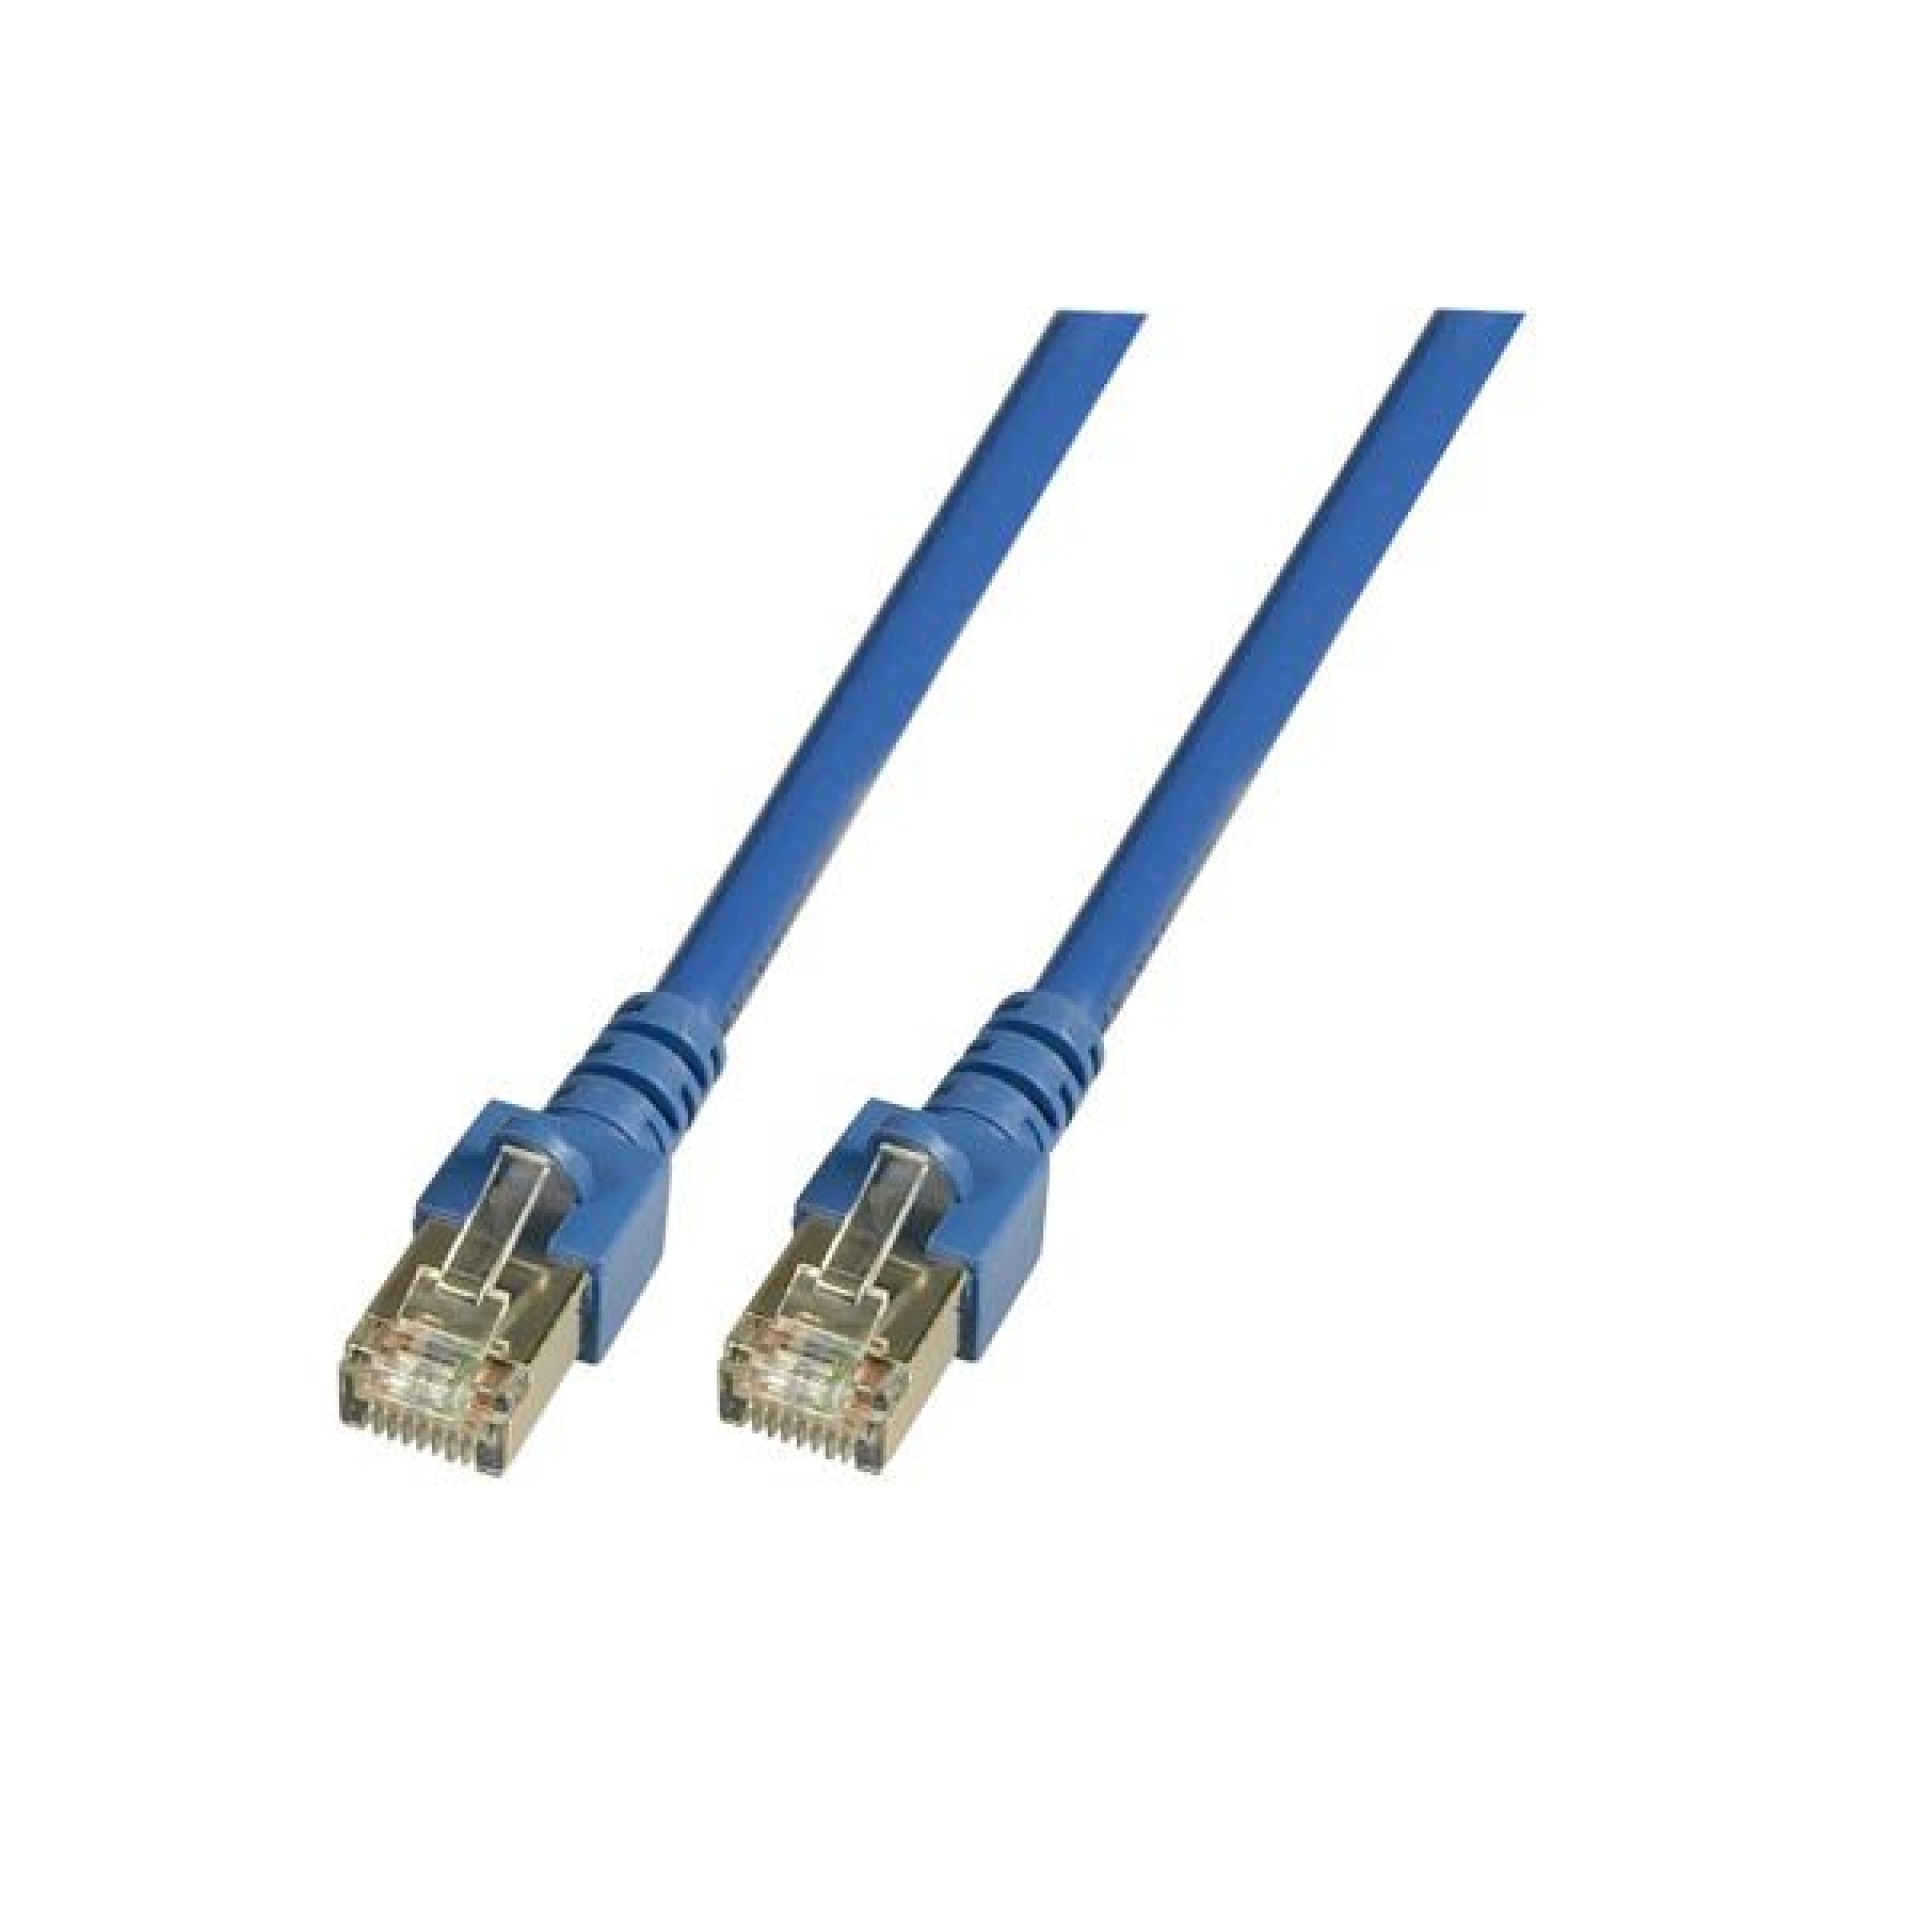 RJ45 Patch cable SF/UTP, Cat.5e, PVC, CCA, 1m, blue